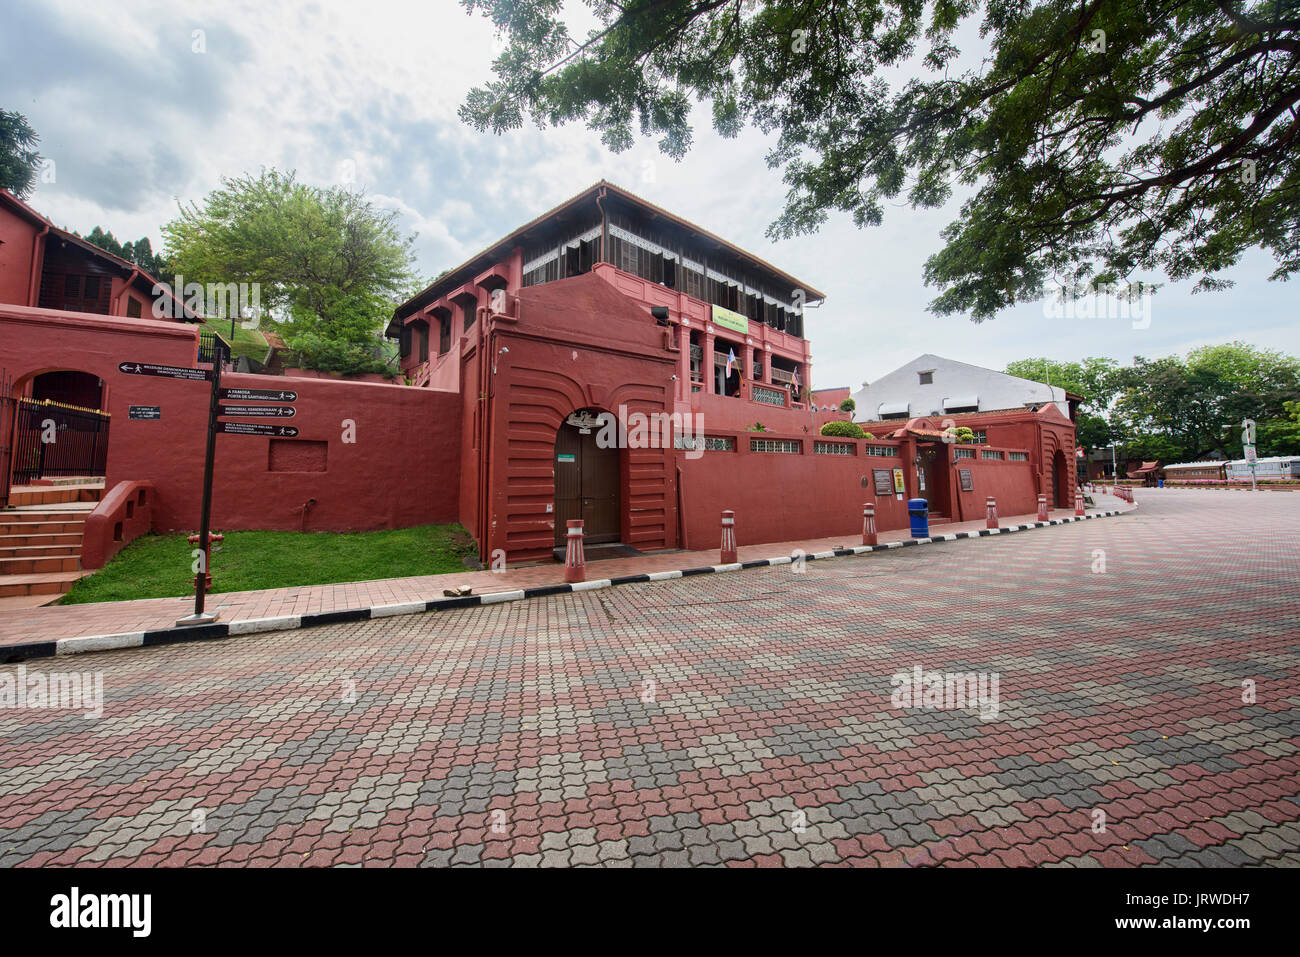 Islamic Museum in Malacca, Malaysia Stock Photo